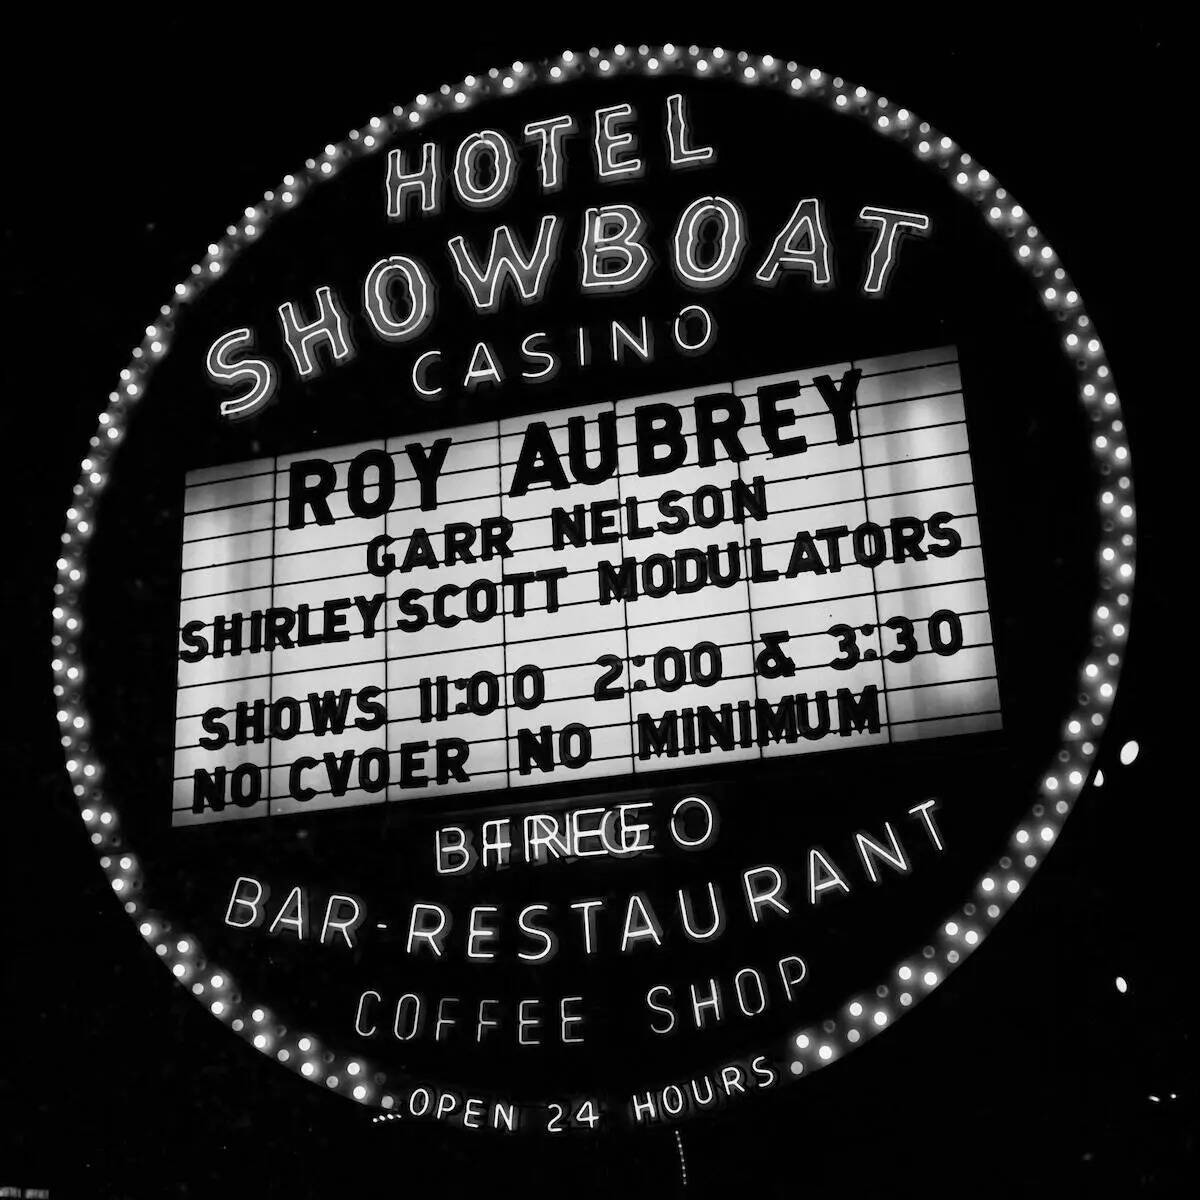 Roy Aubrey es el titular de cartel en Hotel Showboat Casino el 31 de diciembre de 1955. (Las Ve ...